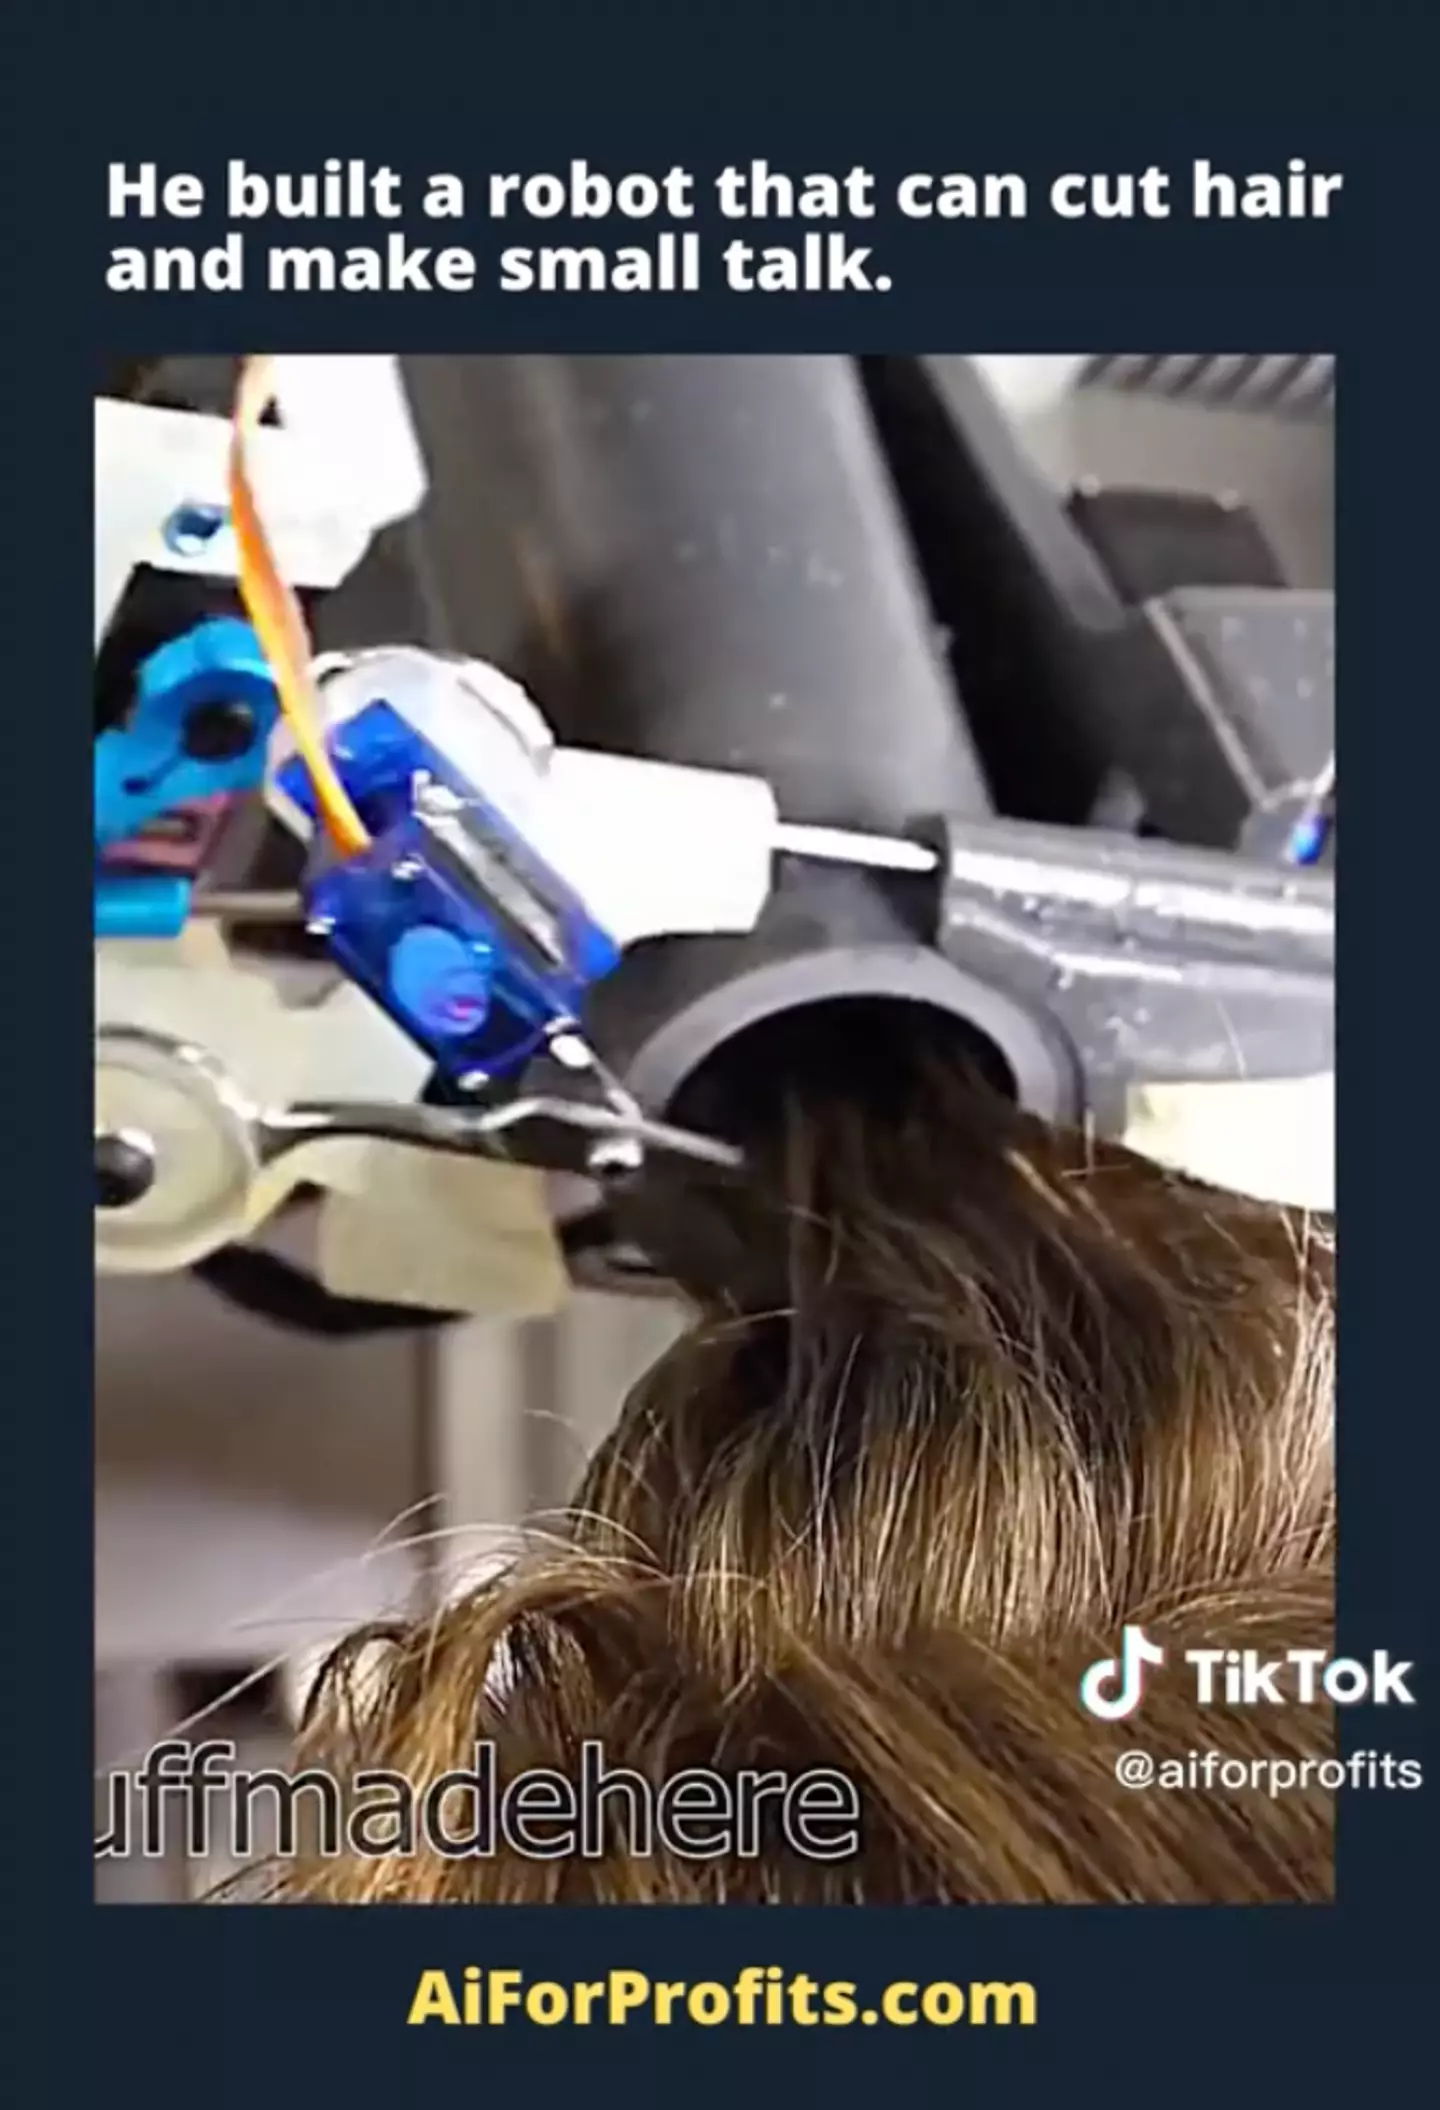 The robot sucks hair into a tube.